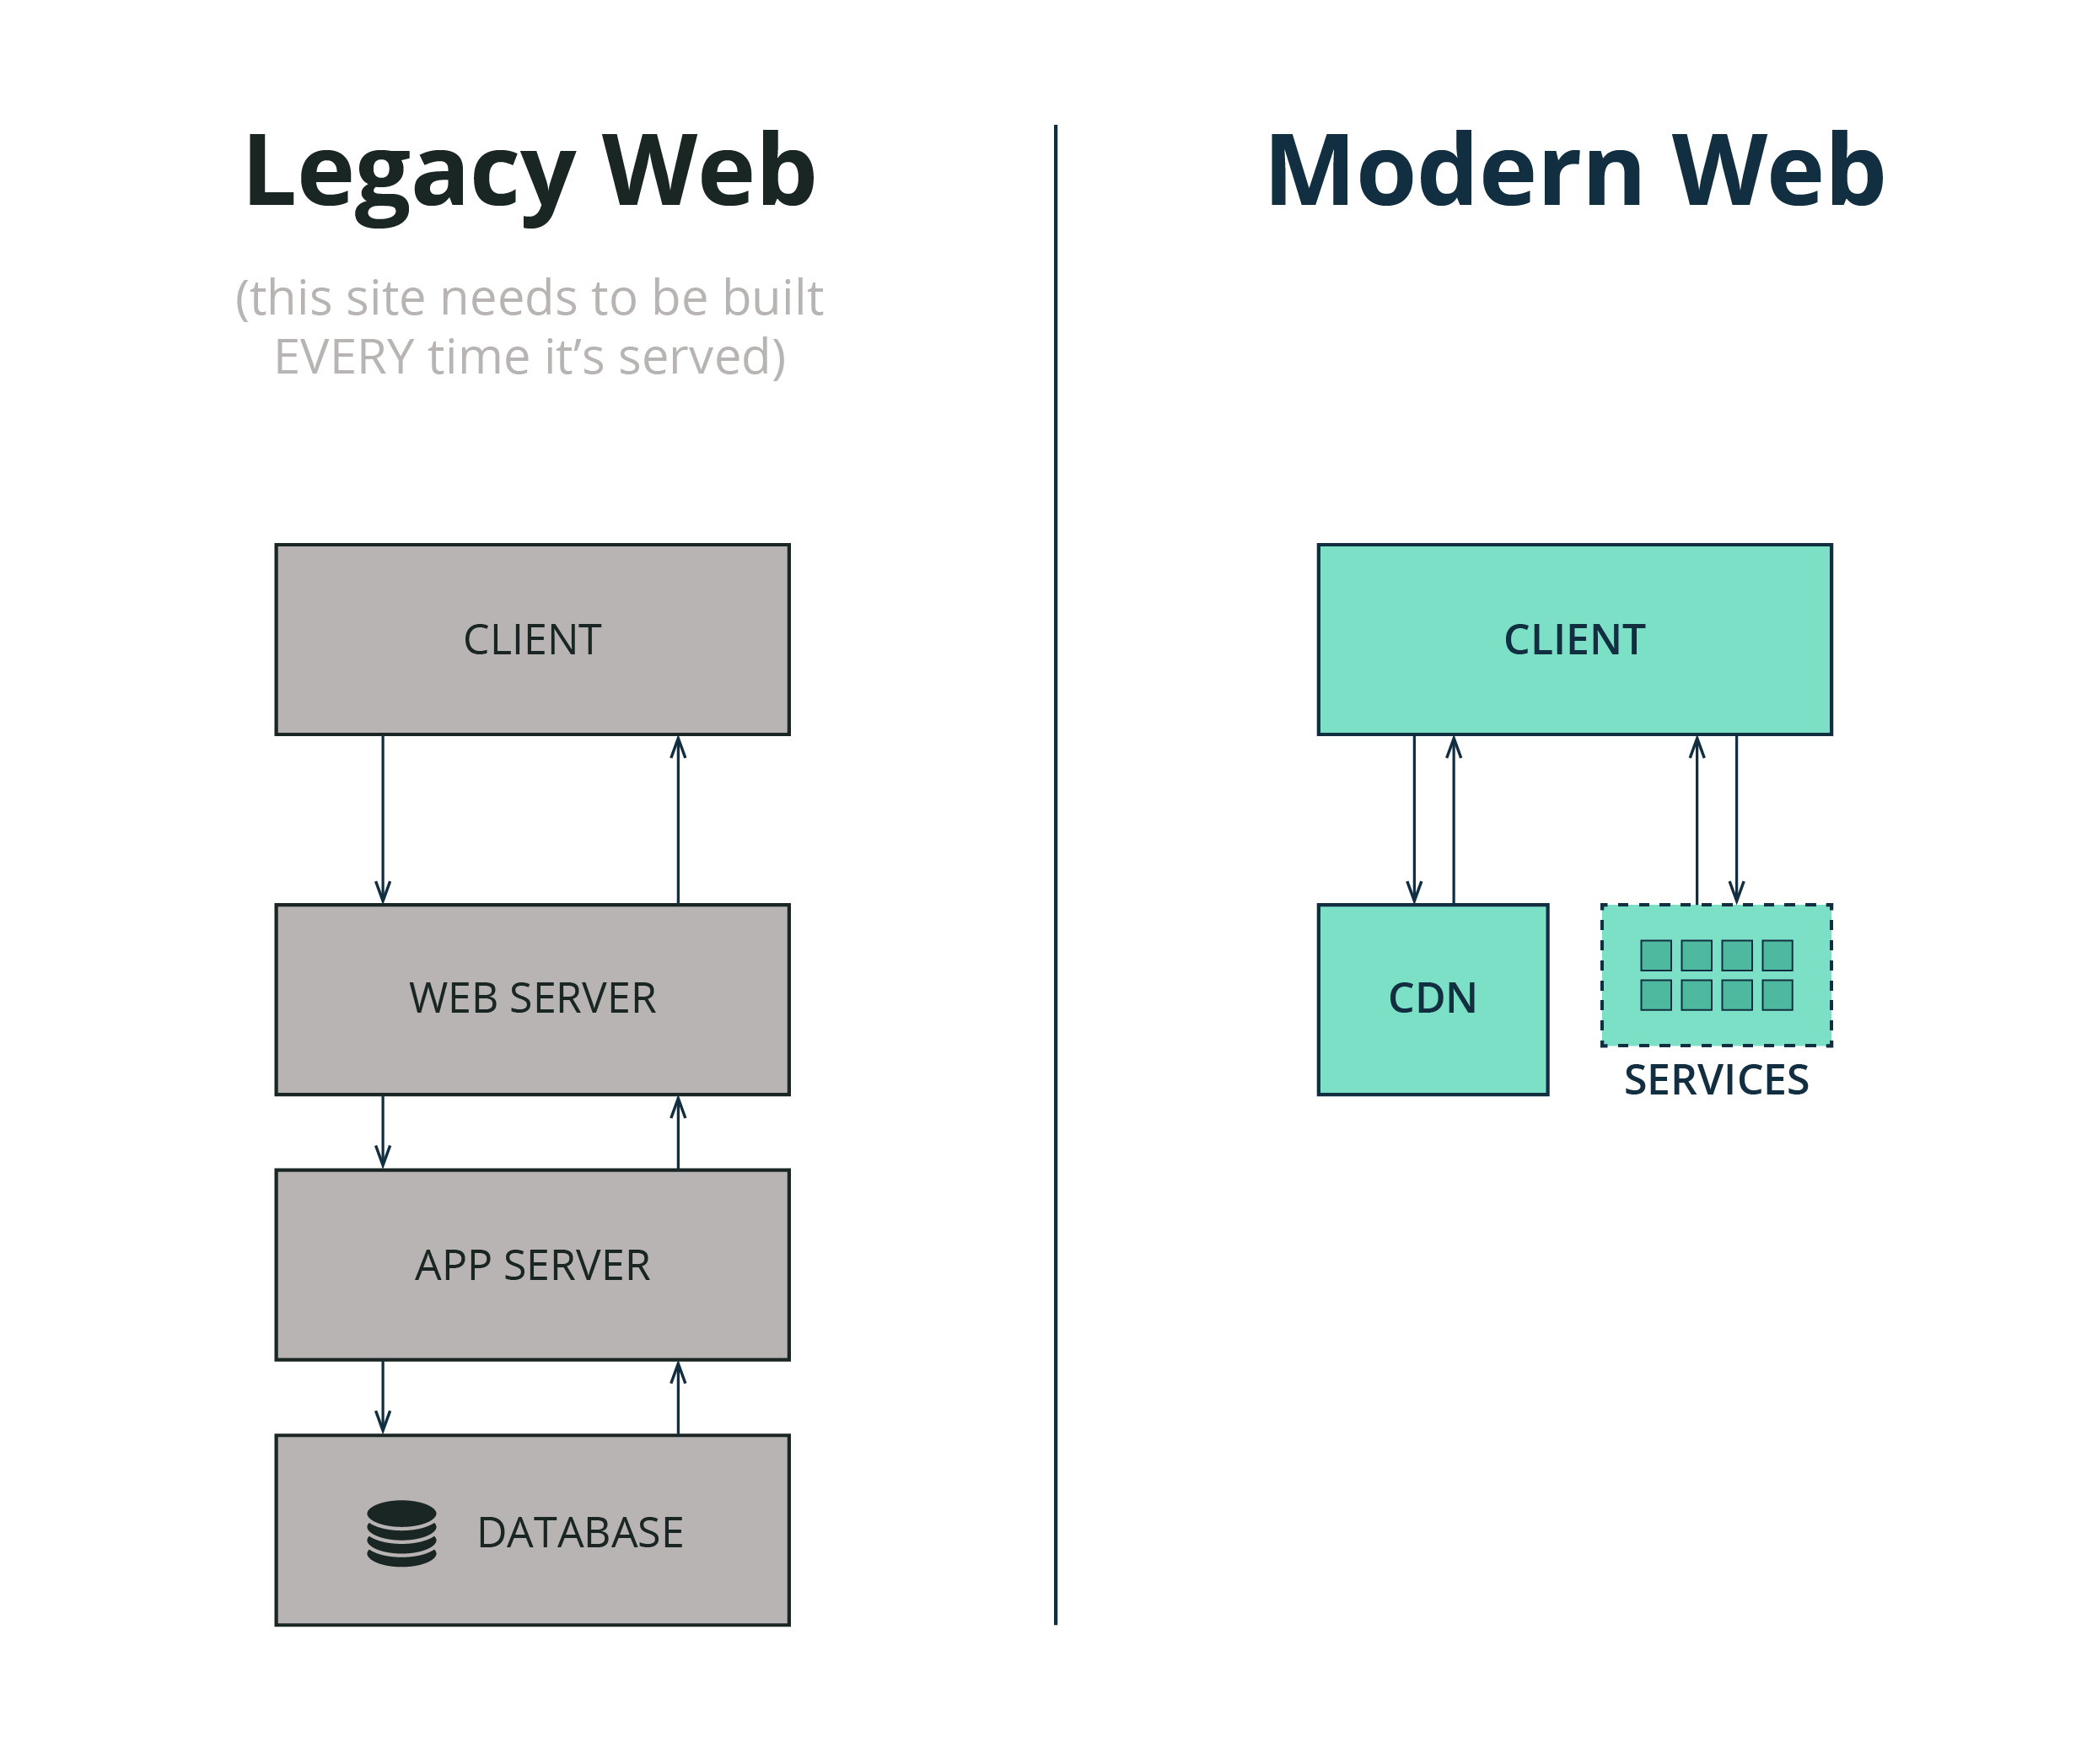 Kiến trúc của hệ thống cũ (web động) và mới (web tĩnh)